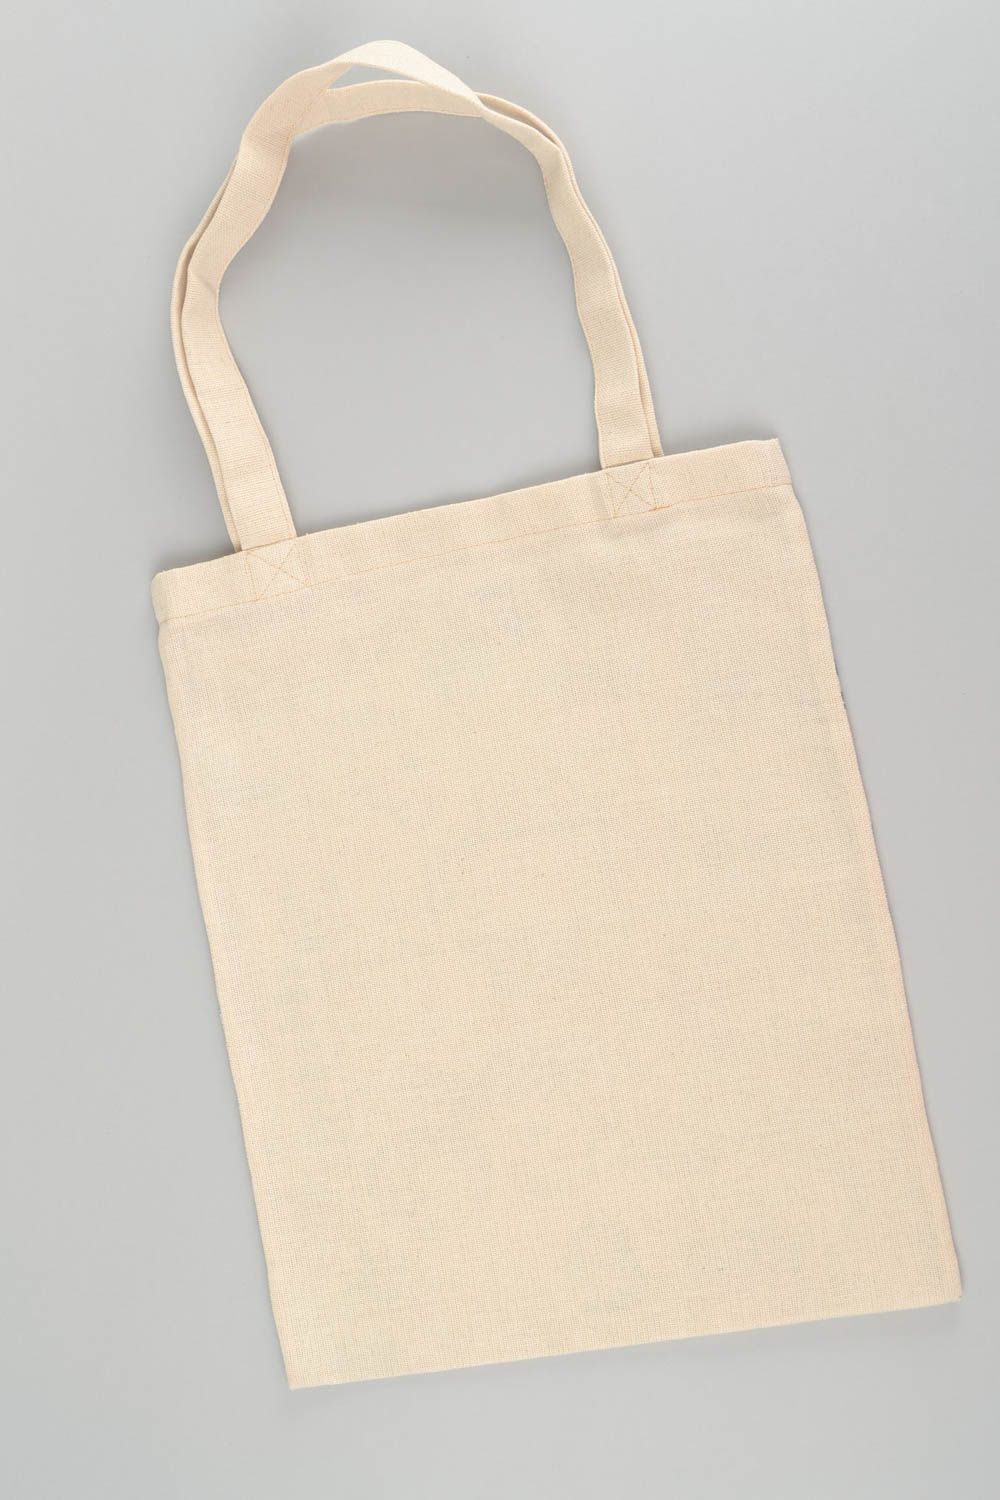 Стильная текстильная сумка ручной работы с орнаментом в этно стиле ручной работы фото 4